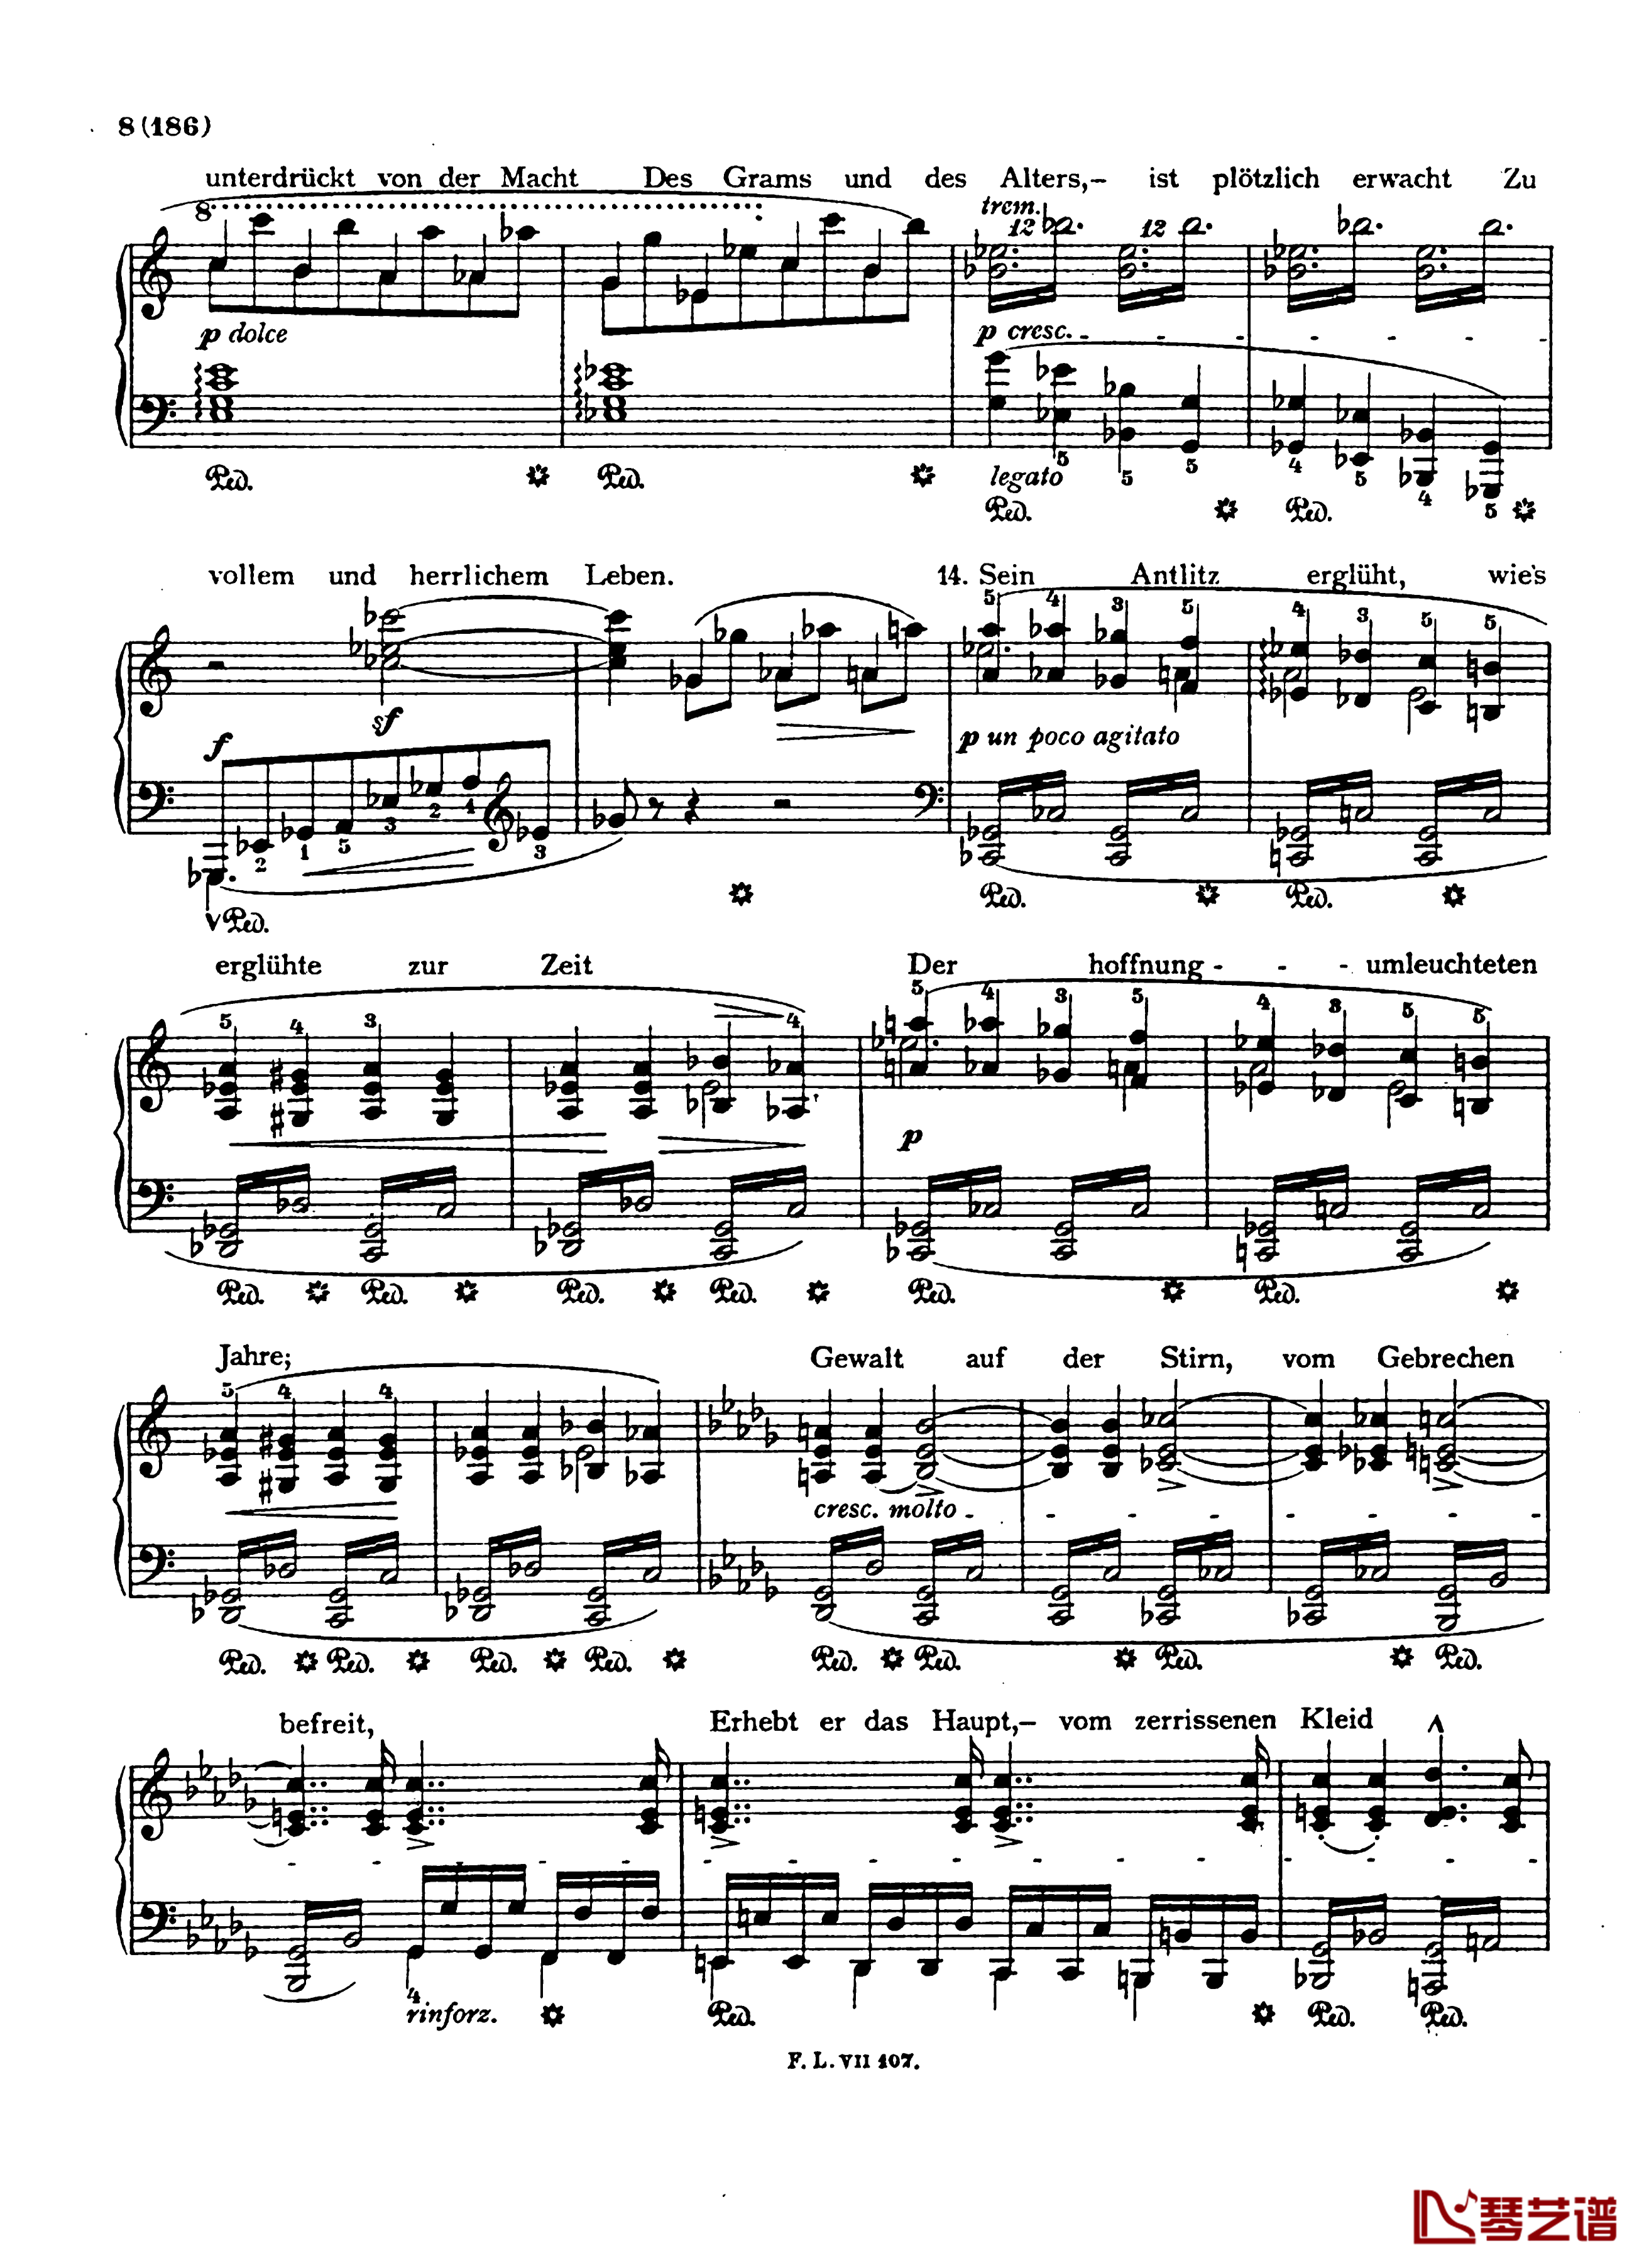  盲人歌手S.350钢琴谱-配乐诗朗诵-李斯特